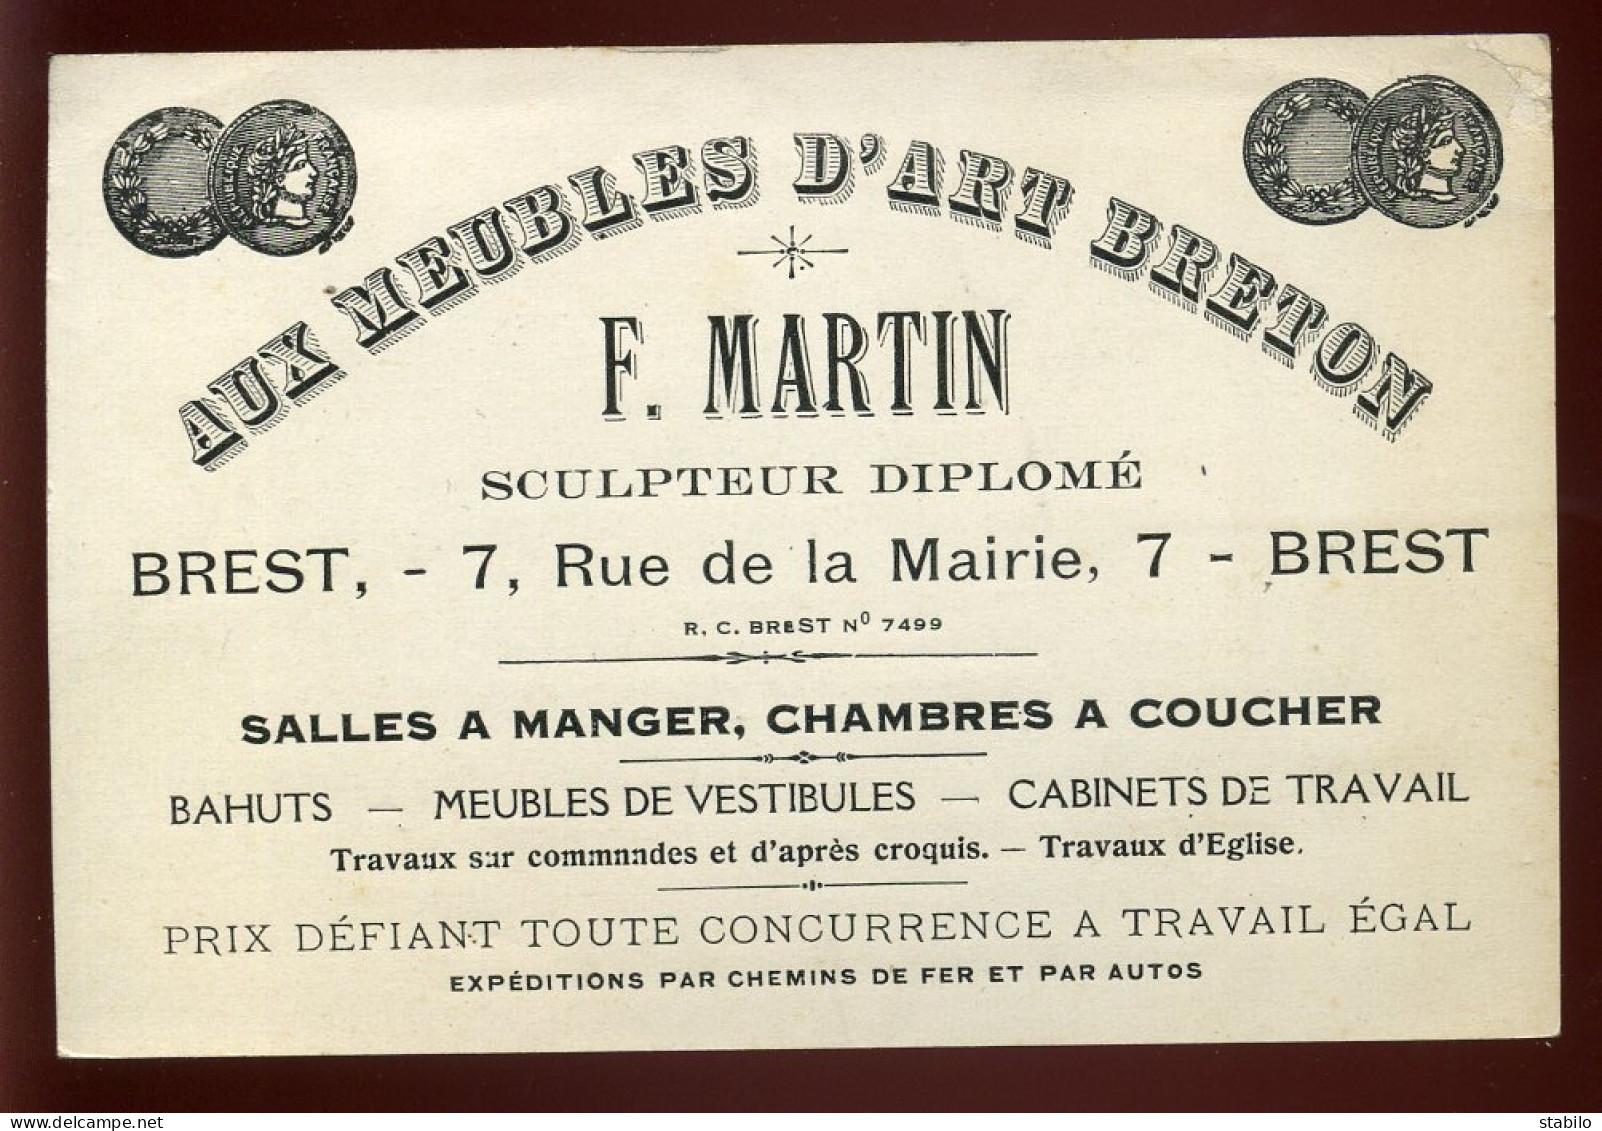 CARTE DE VISITE - BREST - MEUBLES D'ART BRETON F. MARTIN SCULPTEUR - 7 RUE DE LA MAIRIE - Cartes De Visite